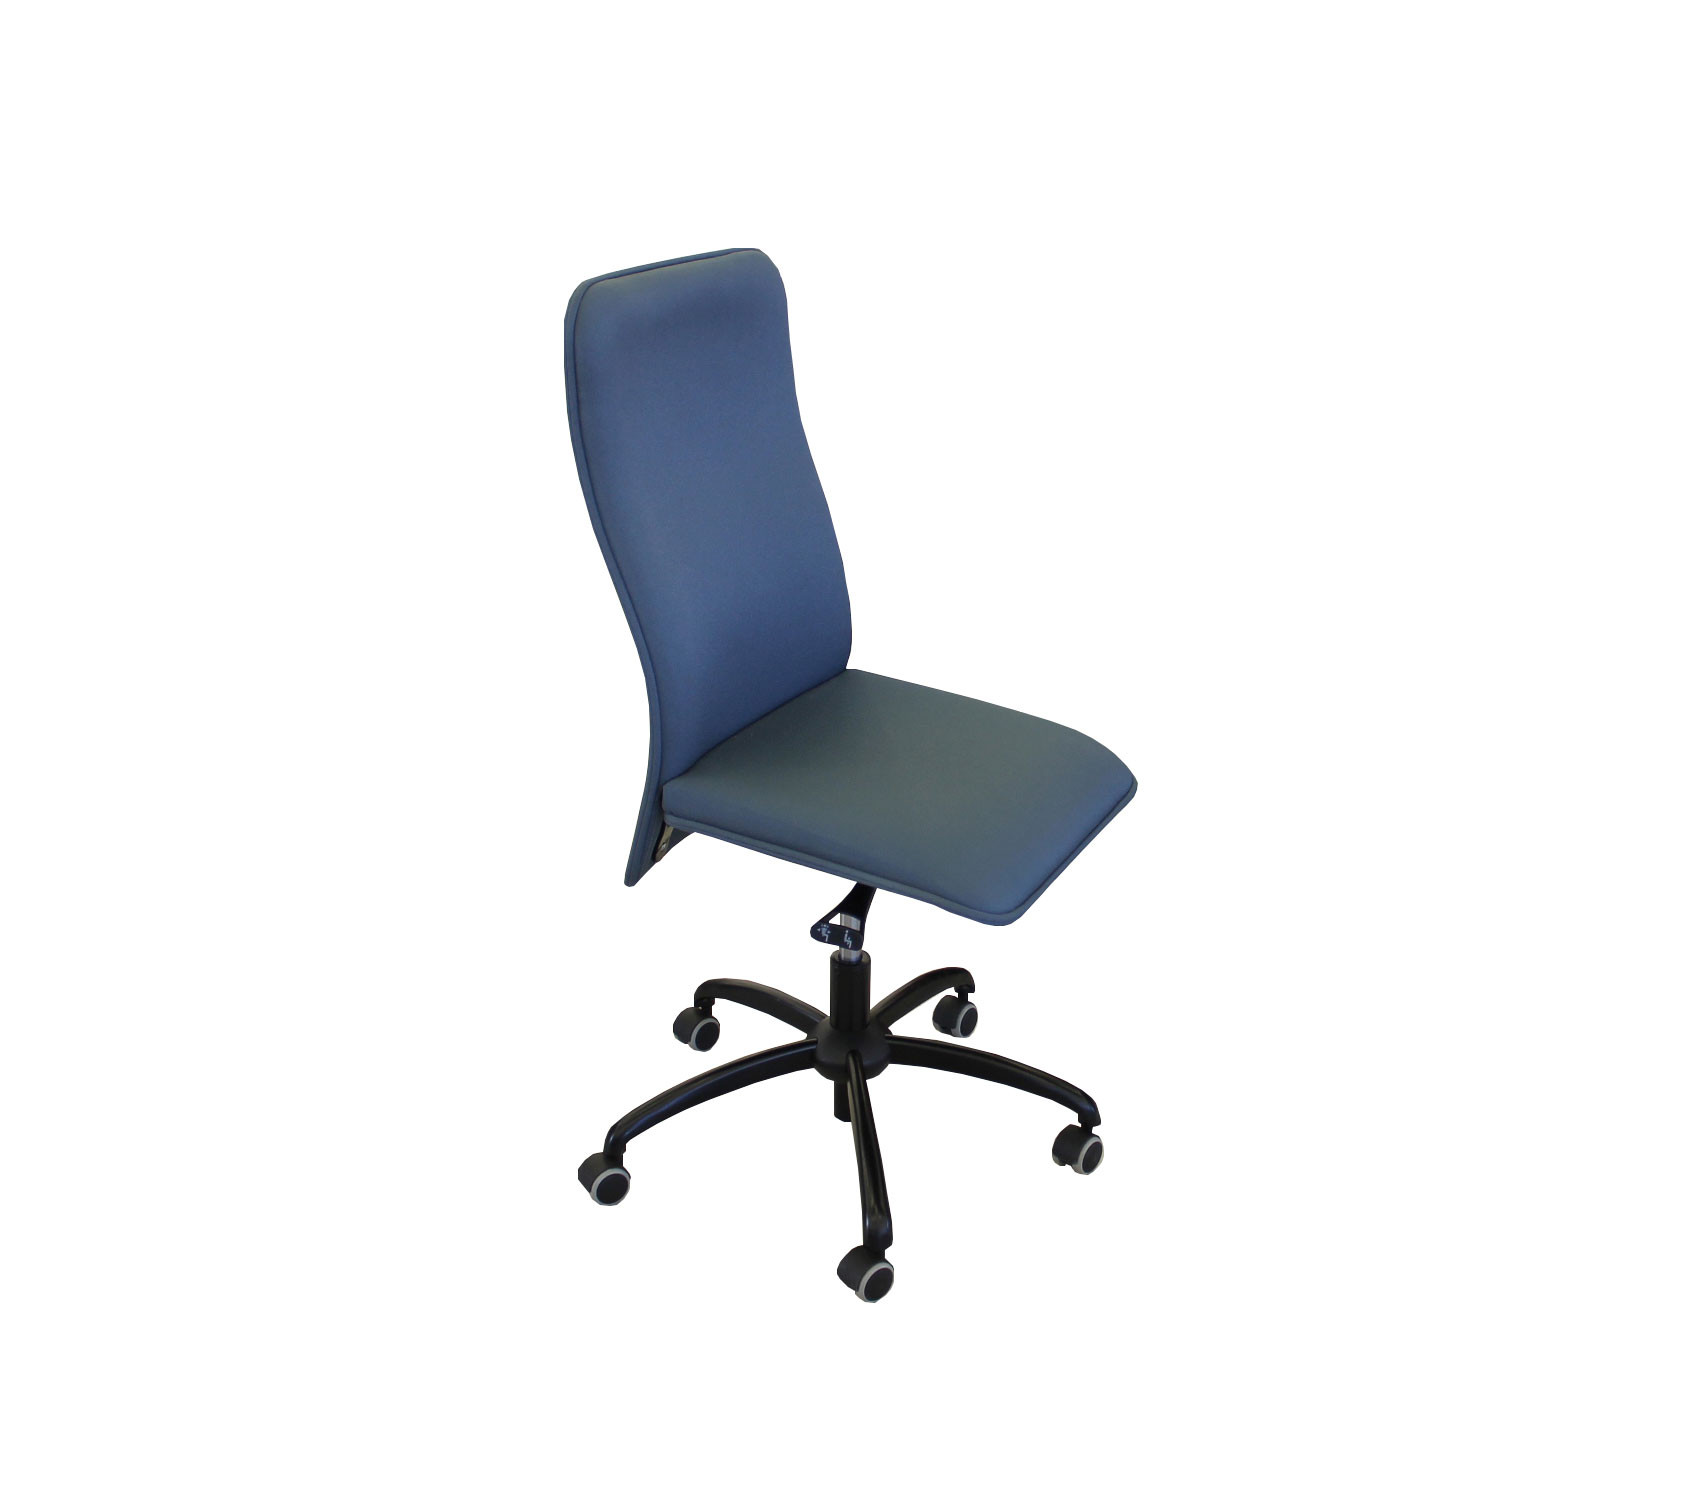 Ergonominė darbo kėdė, kd-248, melsvos spalvos, (maksimali apkrova 110 kg)